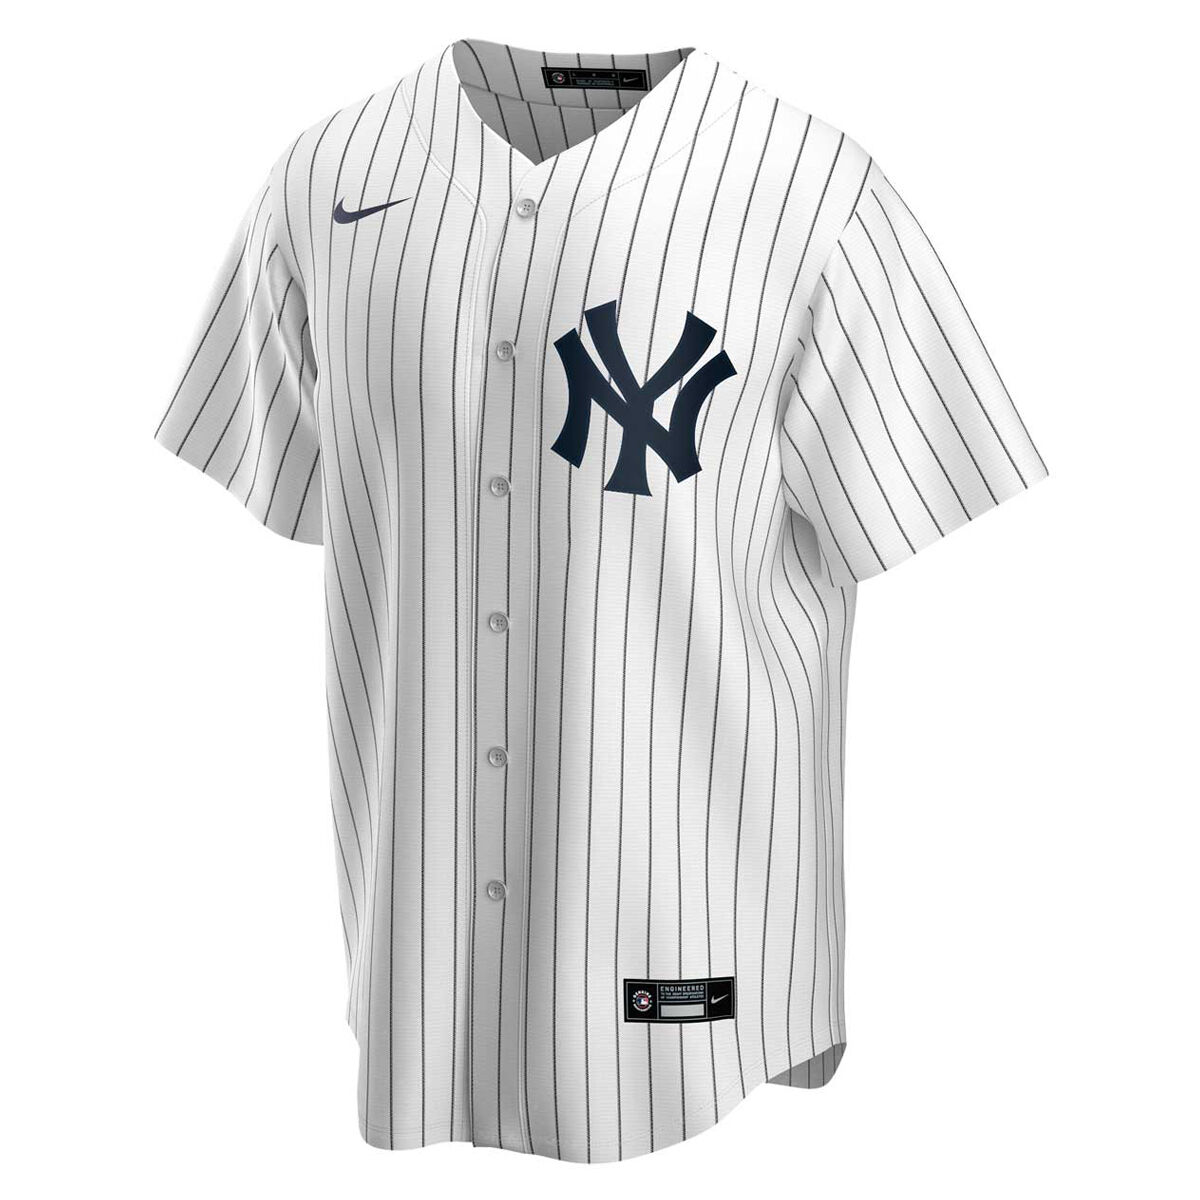 Major League Baseball Jerseys, Fangear & Teamwear